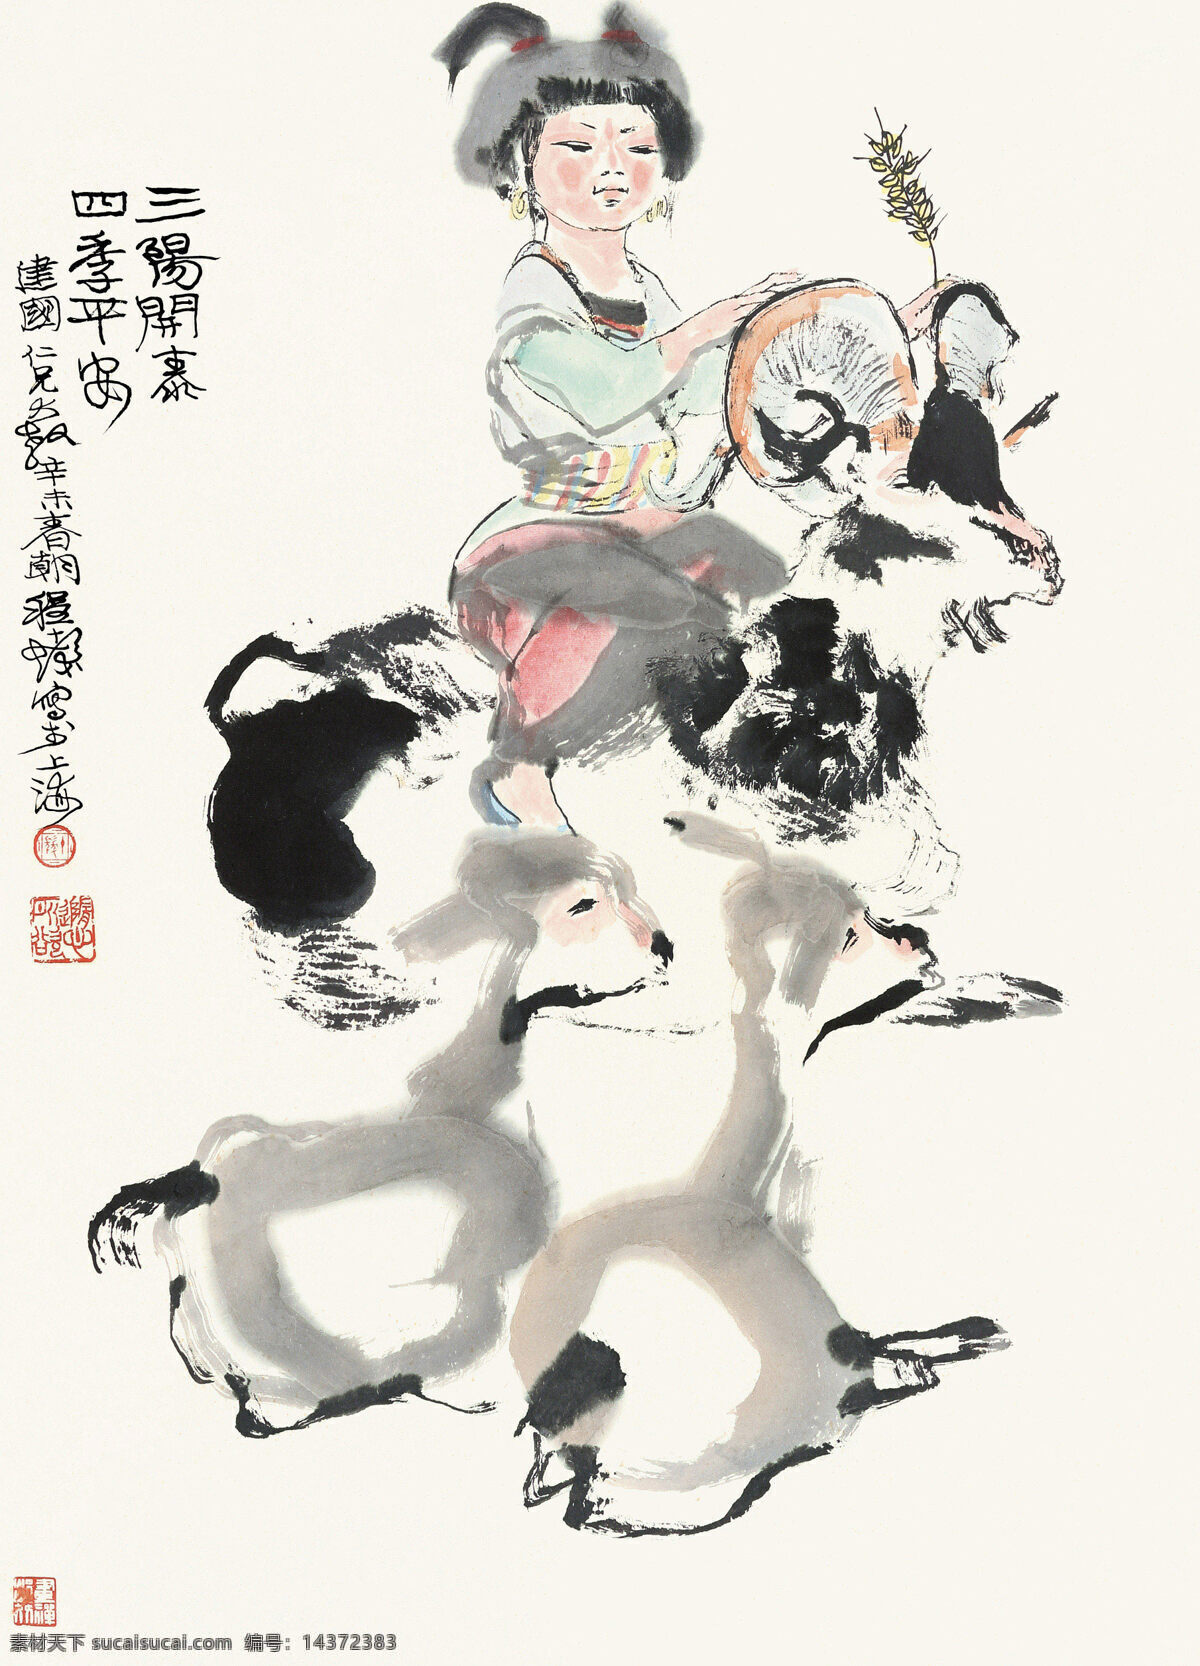 三羊开泰 程十发作品 小姑娘 少数民族 三只羊 中国古代画 中国古画 绘画书法 文化艺术